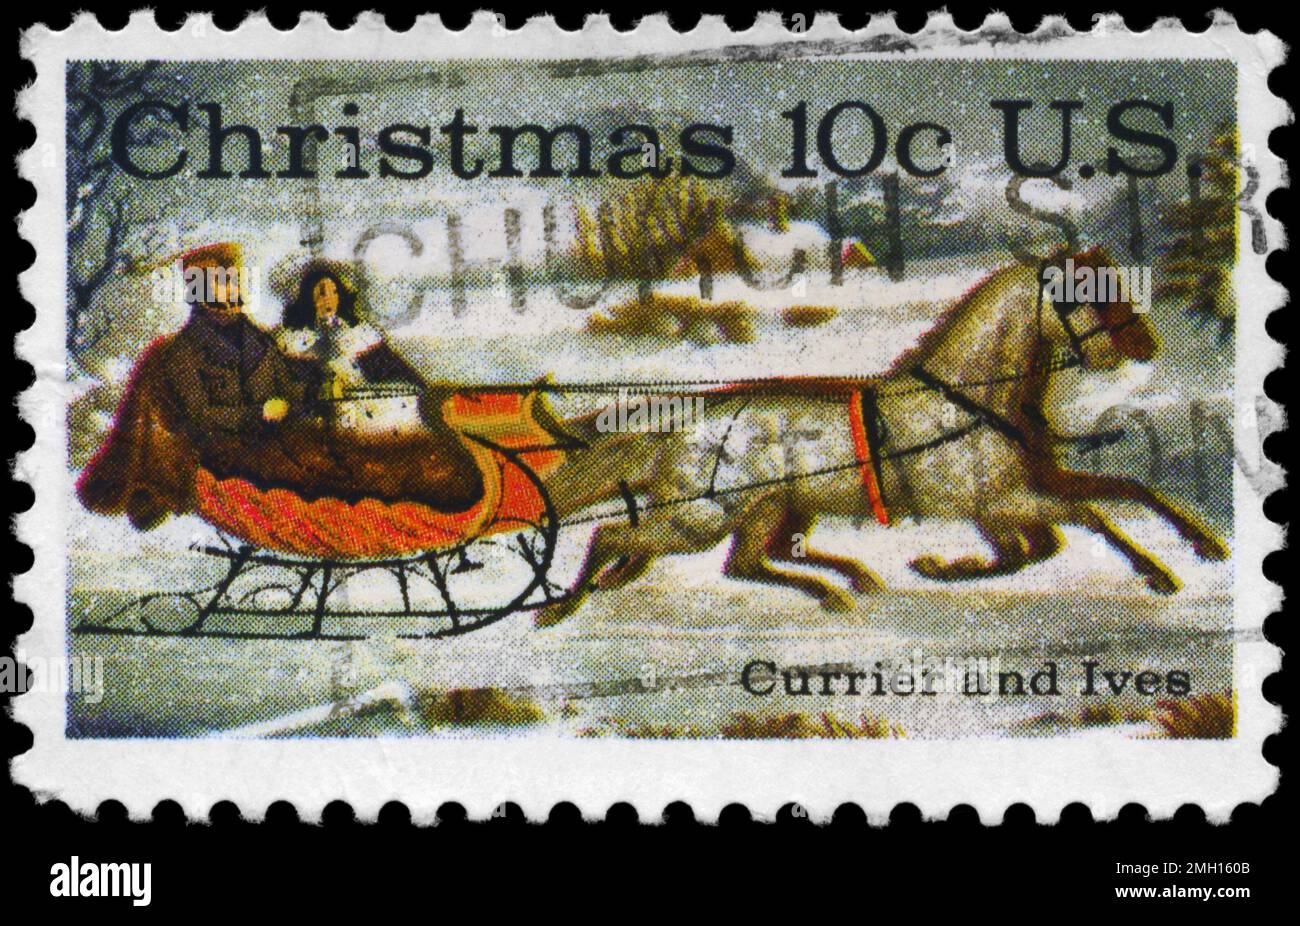 USA - VERS 1974: Un timbre imprimé aux Etats-Unis montre la route-hiver, par Currier et Ives, vers 1974 Banque D'Images